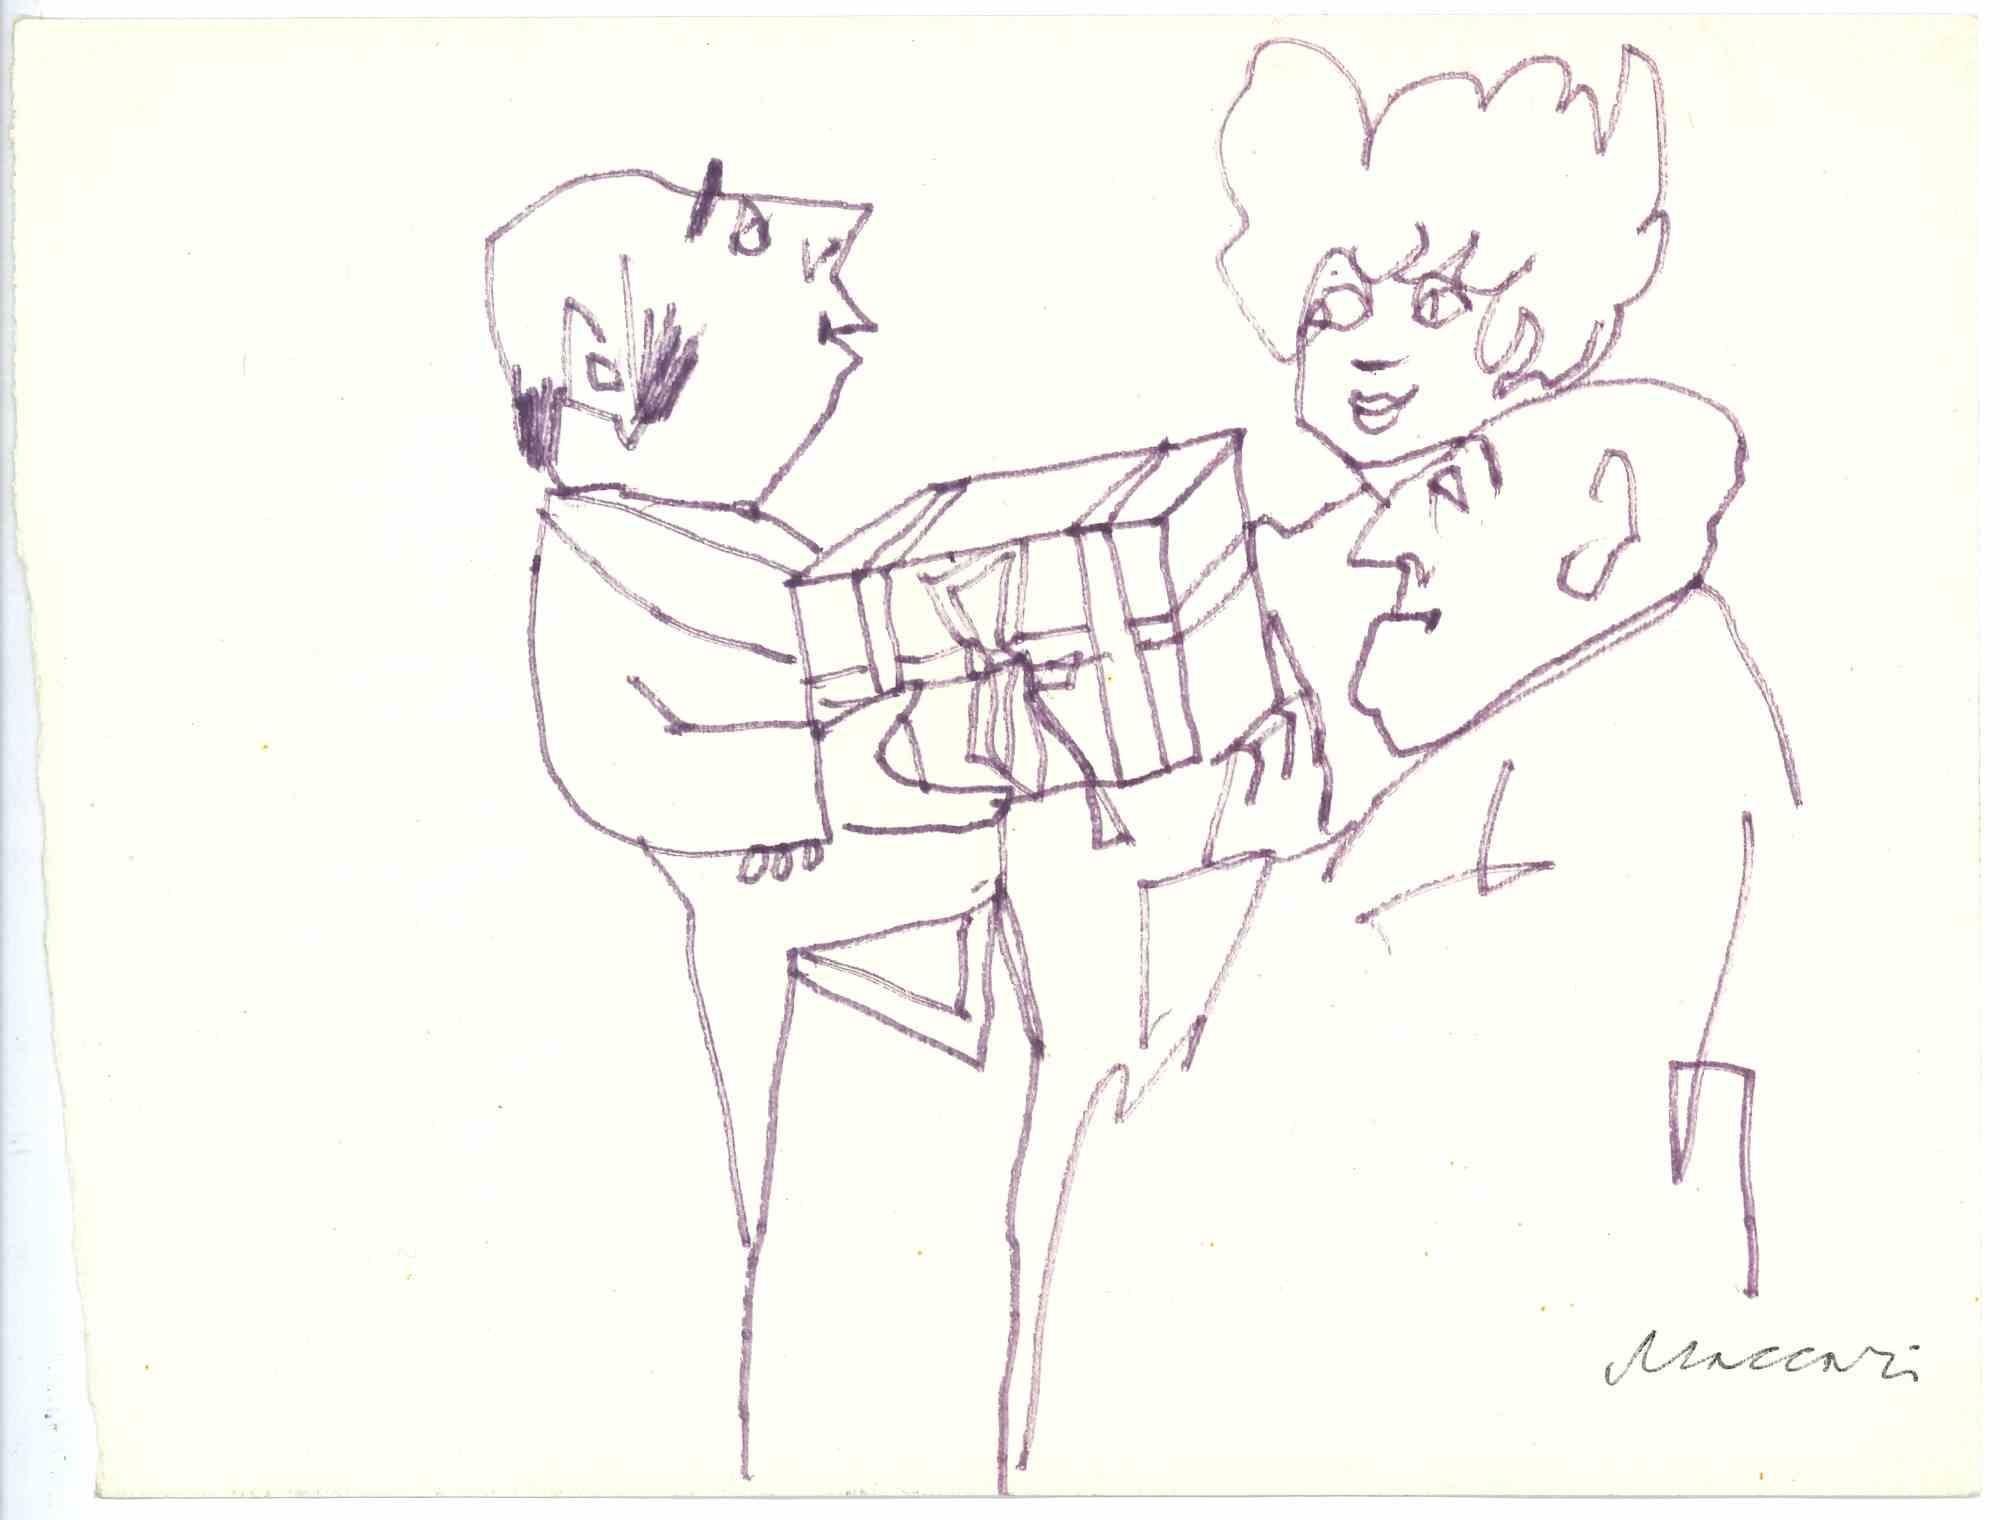 Das Geschenk ist eine violette Marker-Zeichnung von Mino Maccari  (1924-1989) in der Mitte des 20. Jahrhunderts.

Handsigniert auf der Unterseite.

Gute Bedingungen.

Mino Maccari (Siena, 1924-Rom, 16. Juni 1989) war ein italienischer